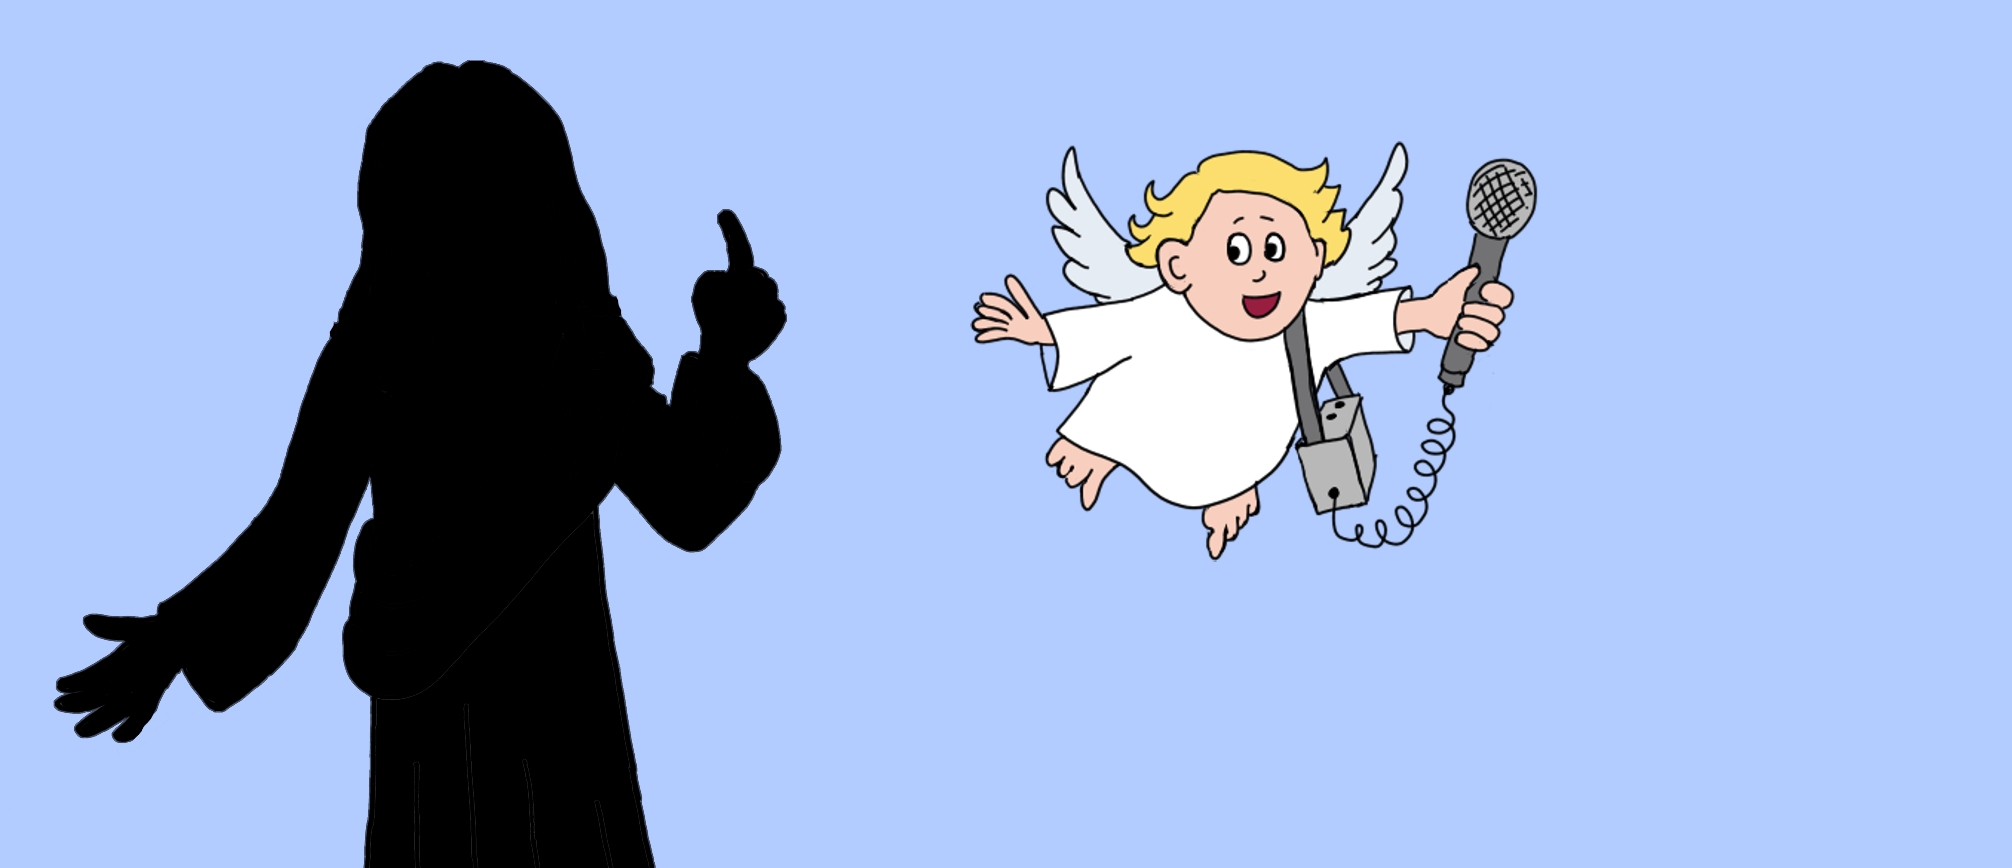 La silhouette de Jésus, et le petite ange avec un micro